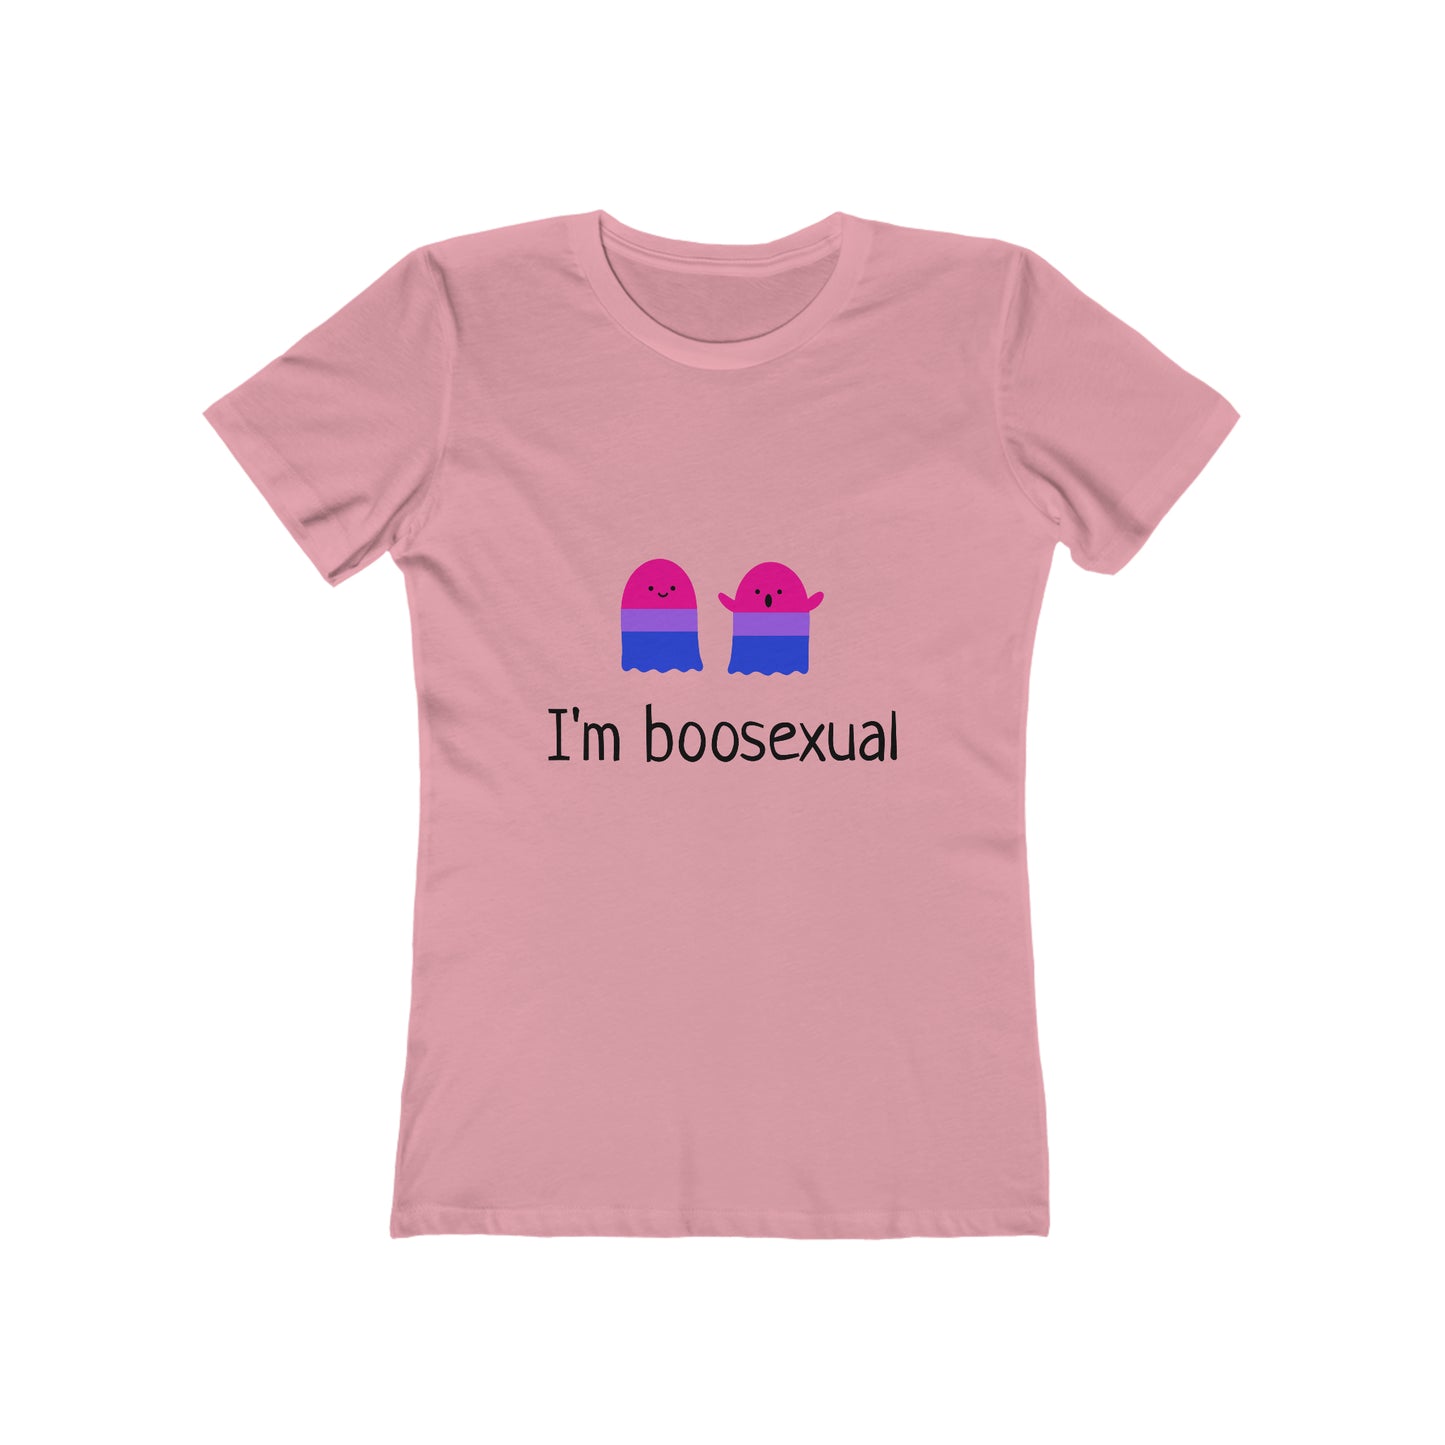 I'm Boosexual - Women's T-shirt